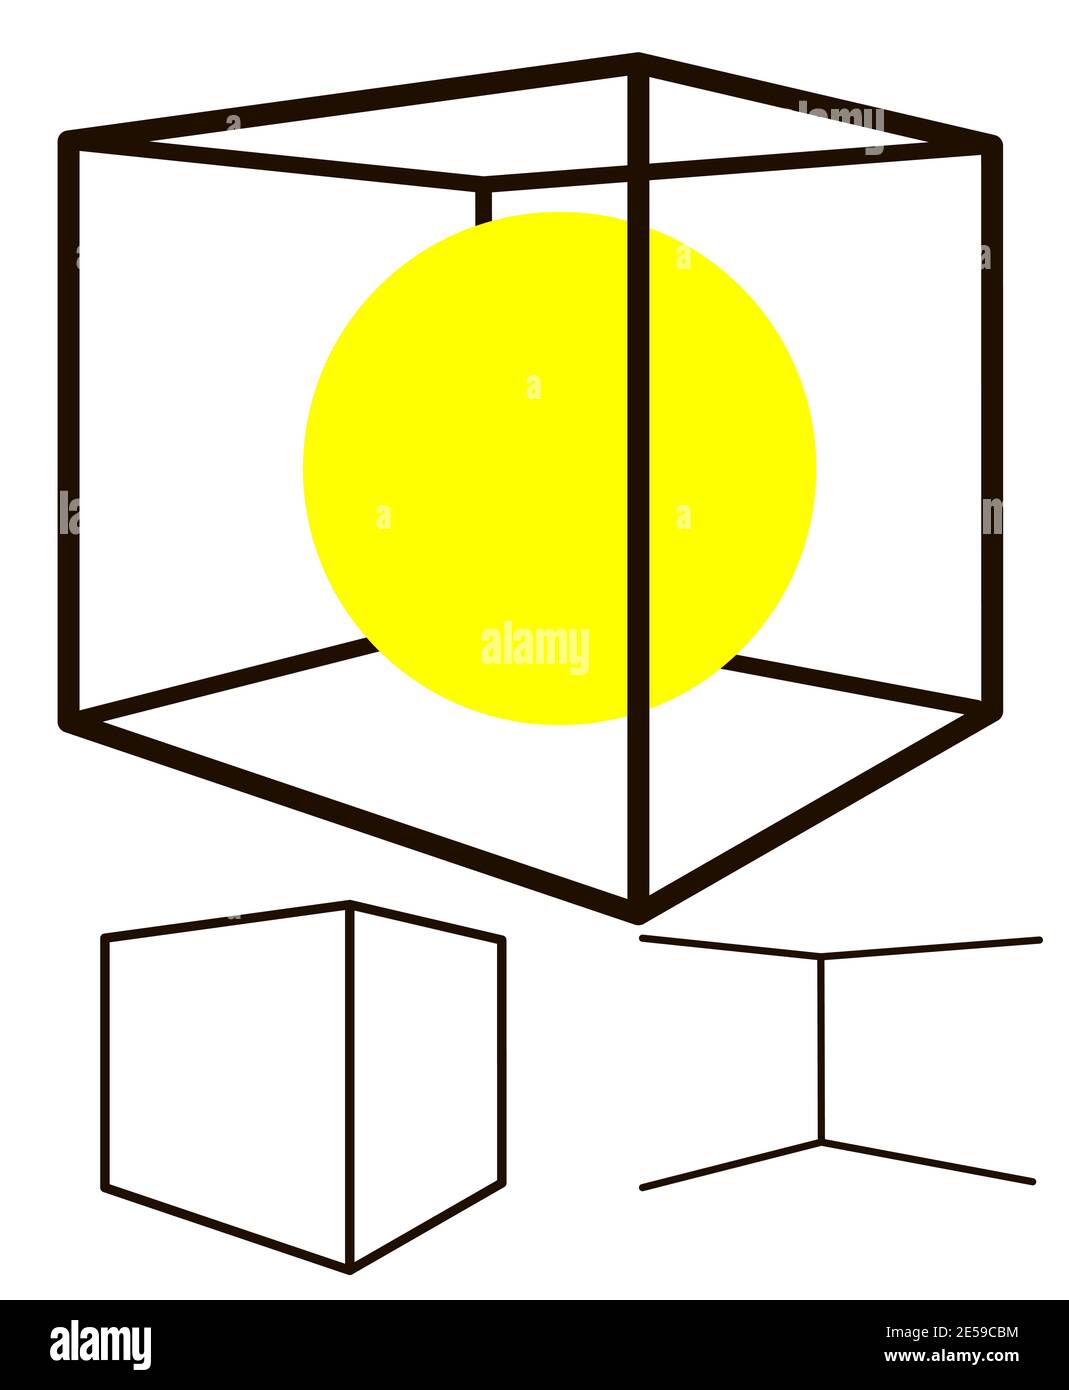 Cube Silhouette Vorder- und Rückseite Kanten und Kreis innen in separaten Schichten. Erstellen Sie Ihr eigenes Design und legen Sie Bilder in die Würfel Schichten Teile. EPS10 V Stock Vektor